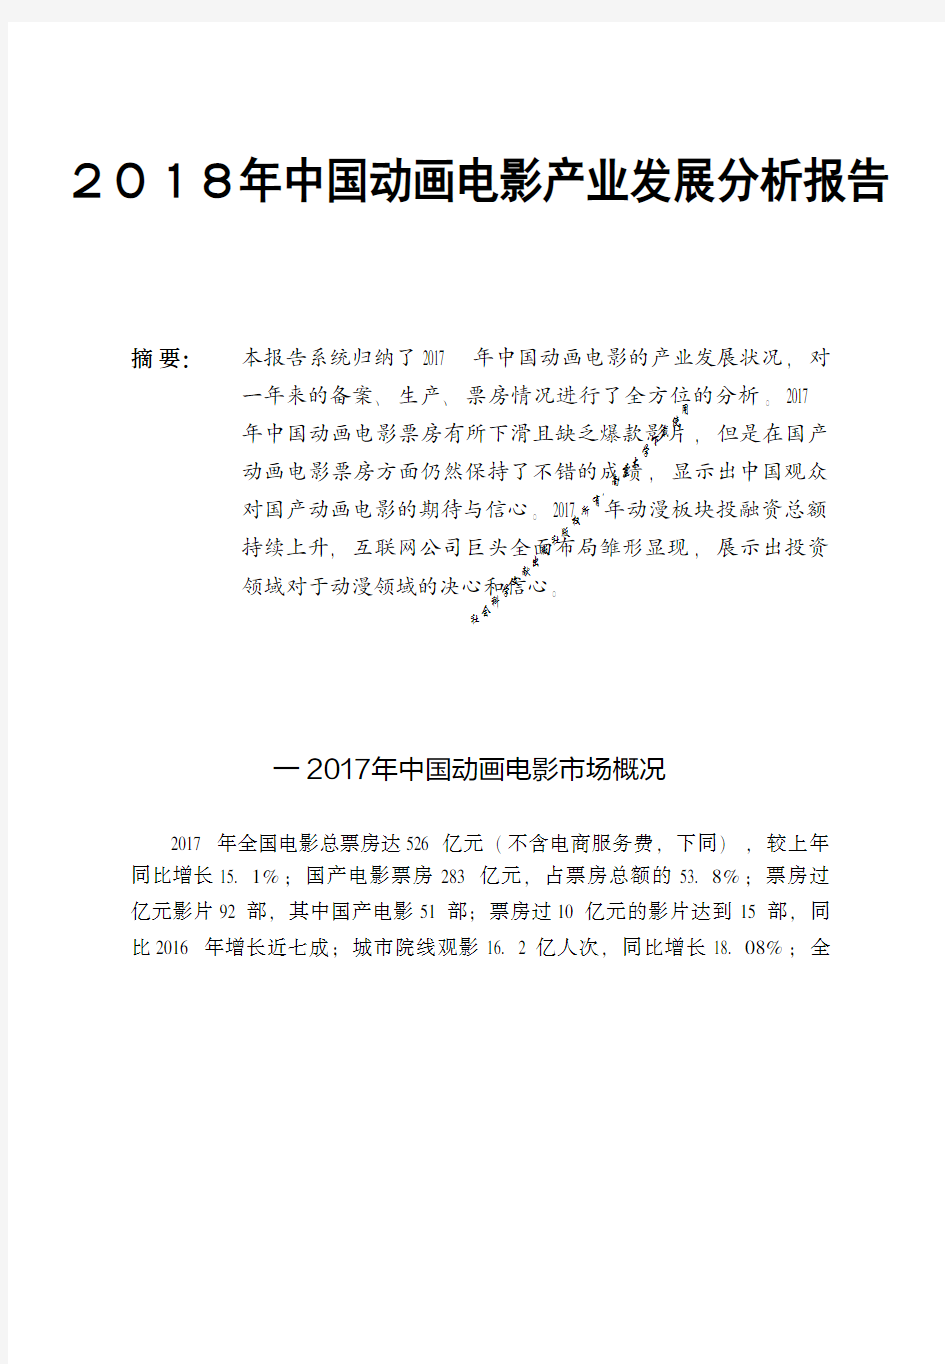 2018年中国动画电影产业发展分析报告